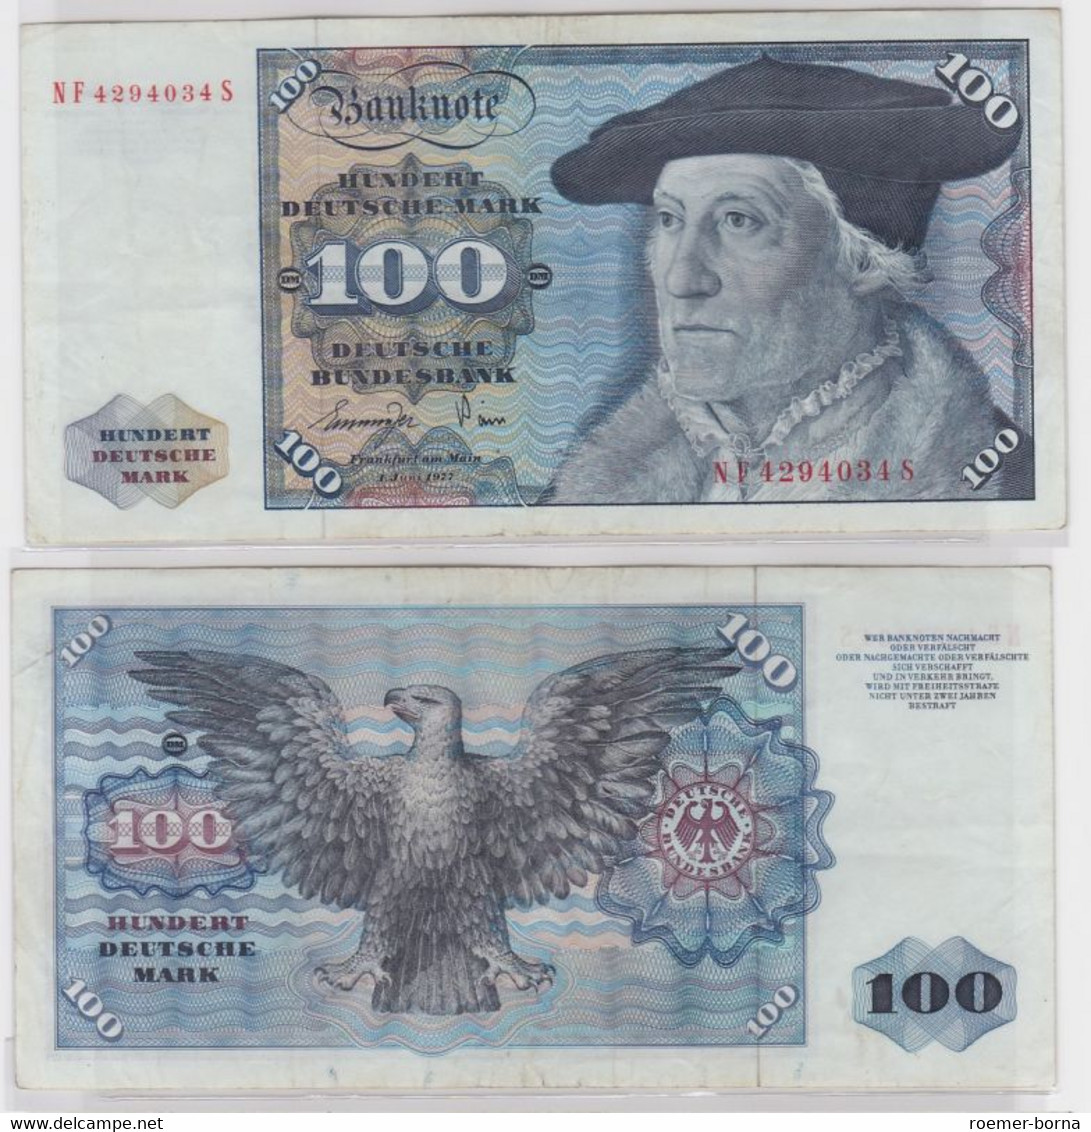 T146559 Banknote 100 DM Deutsche Mark Ro 278a Schein 1.Juni 1977 KN NF 4294034 S - 100 DM